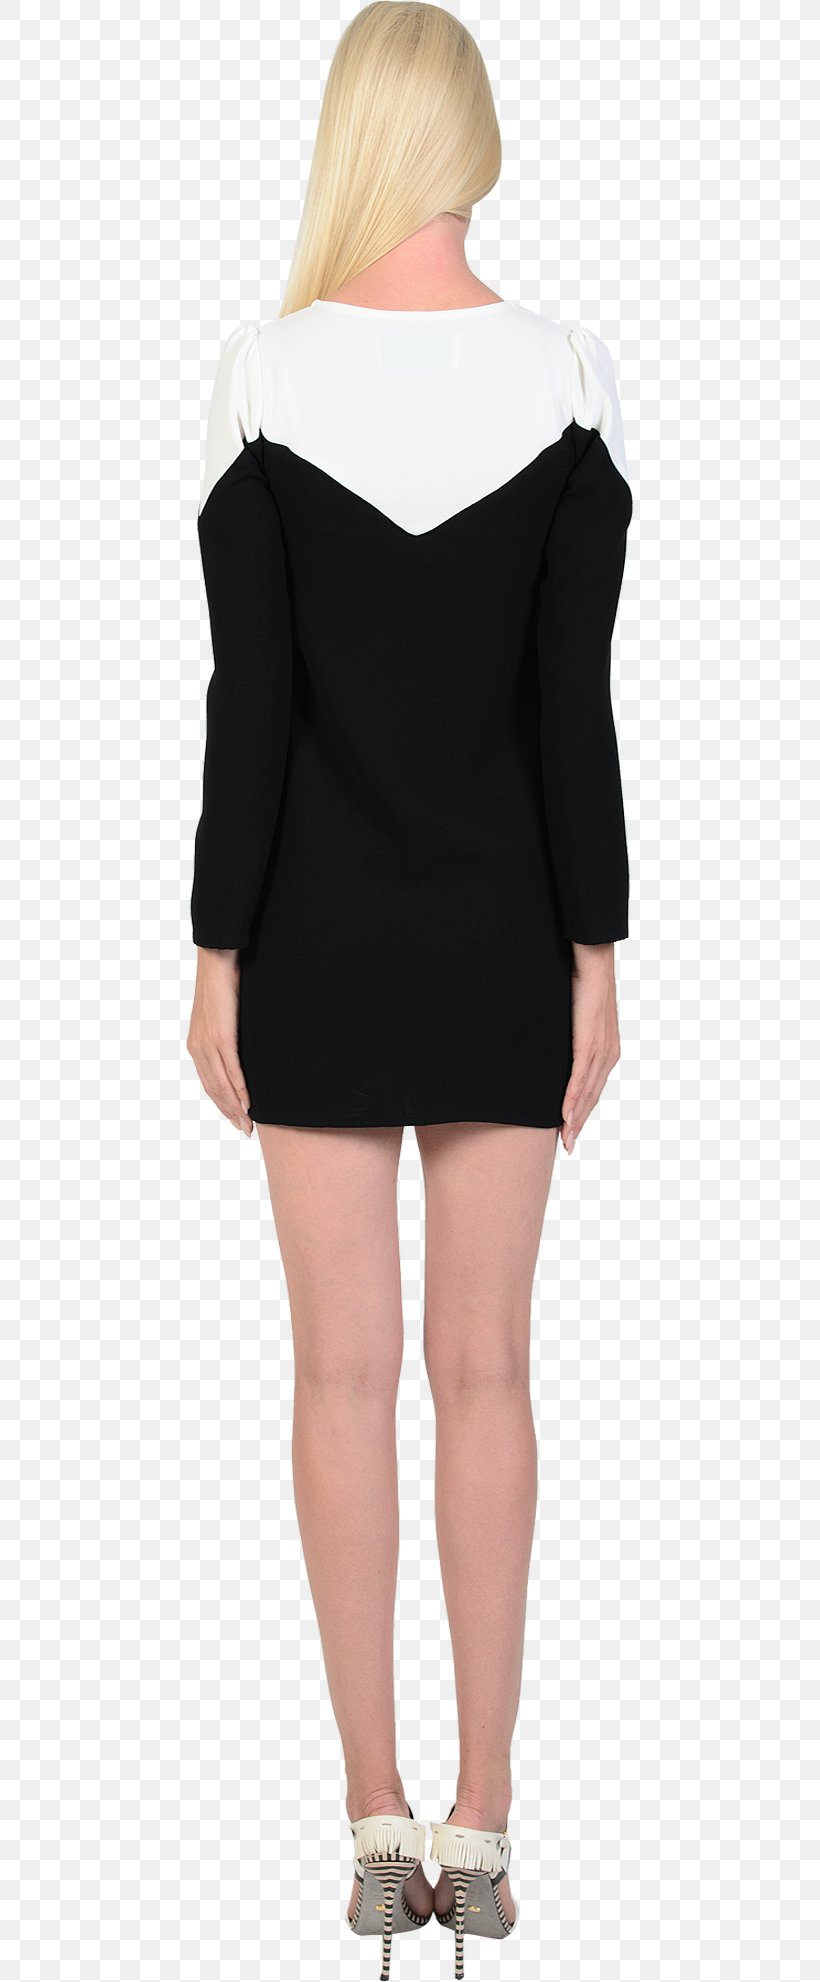 Shoulder Sleeve Black M, PNG, 447x1982px, Shoulder, Black, Black M, Clothing, Fashion Model Download Free